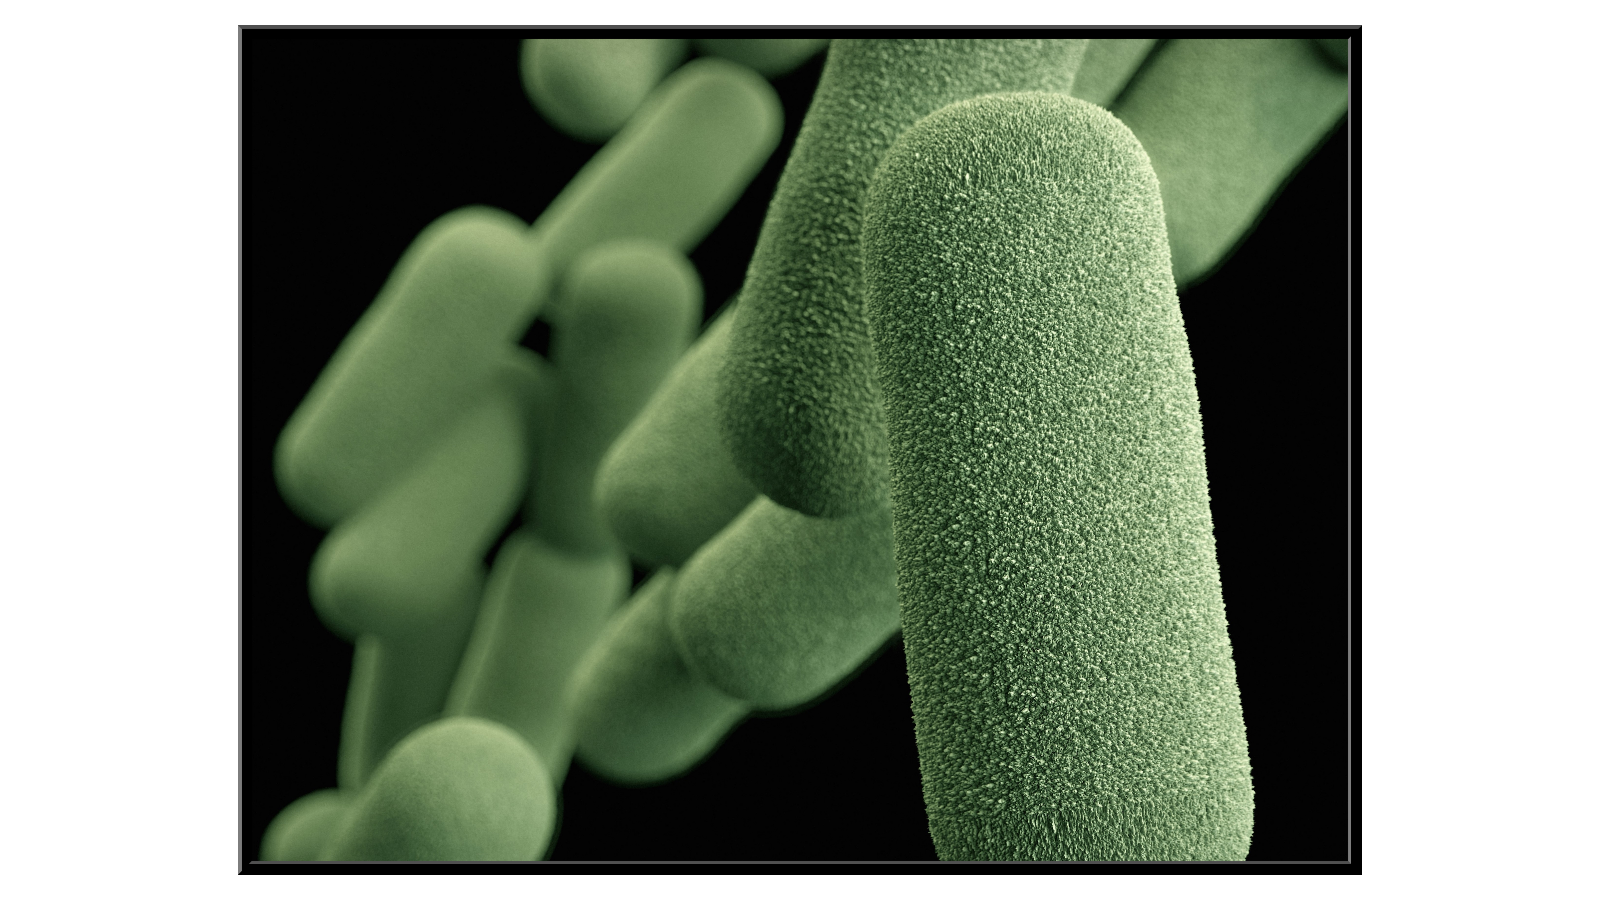 Influenza bacteria